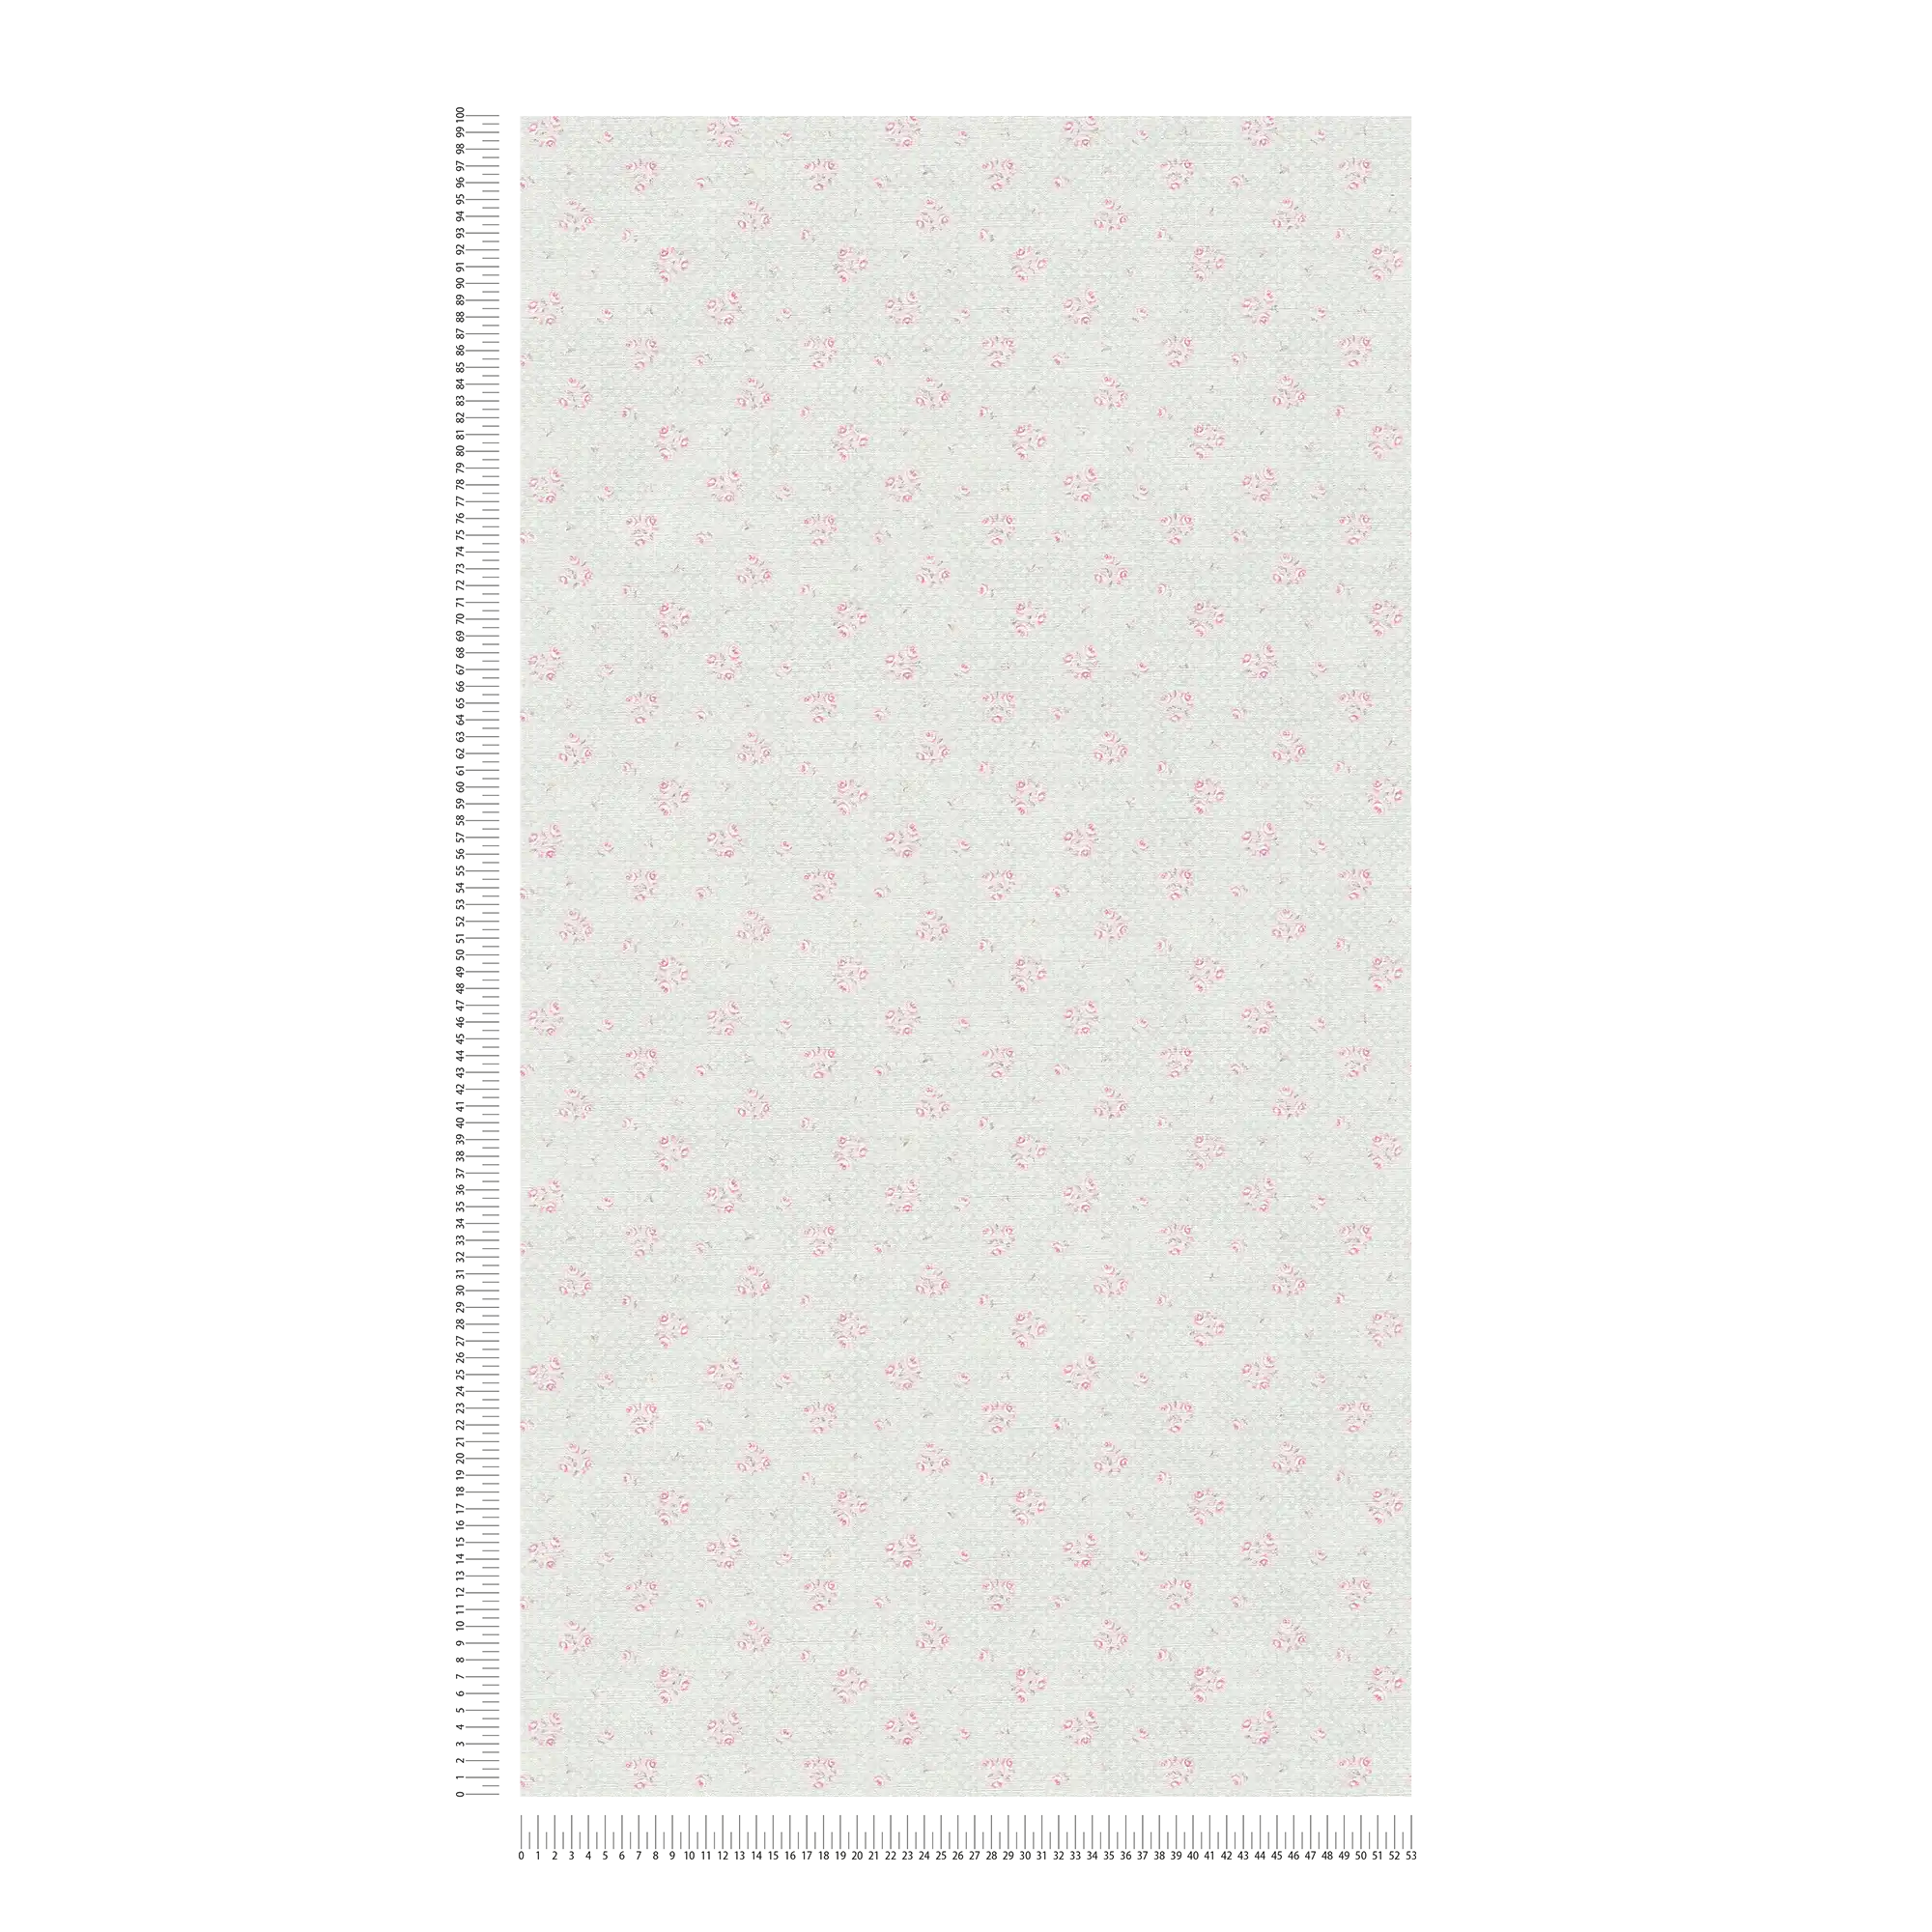             Vliestapete mit Blumenmuster im Shabby Chic Stil – Grau, Rosa, Weiß
        